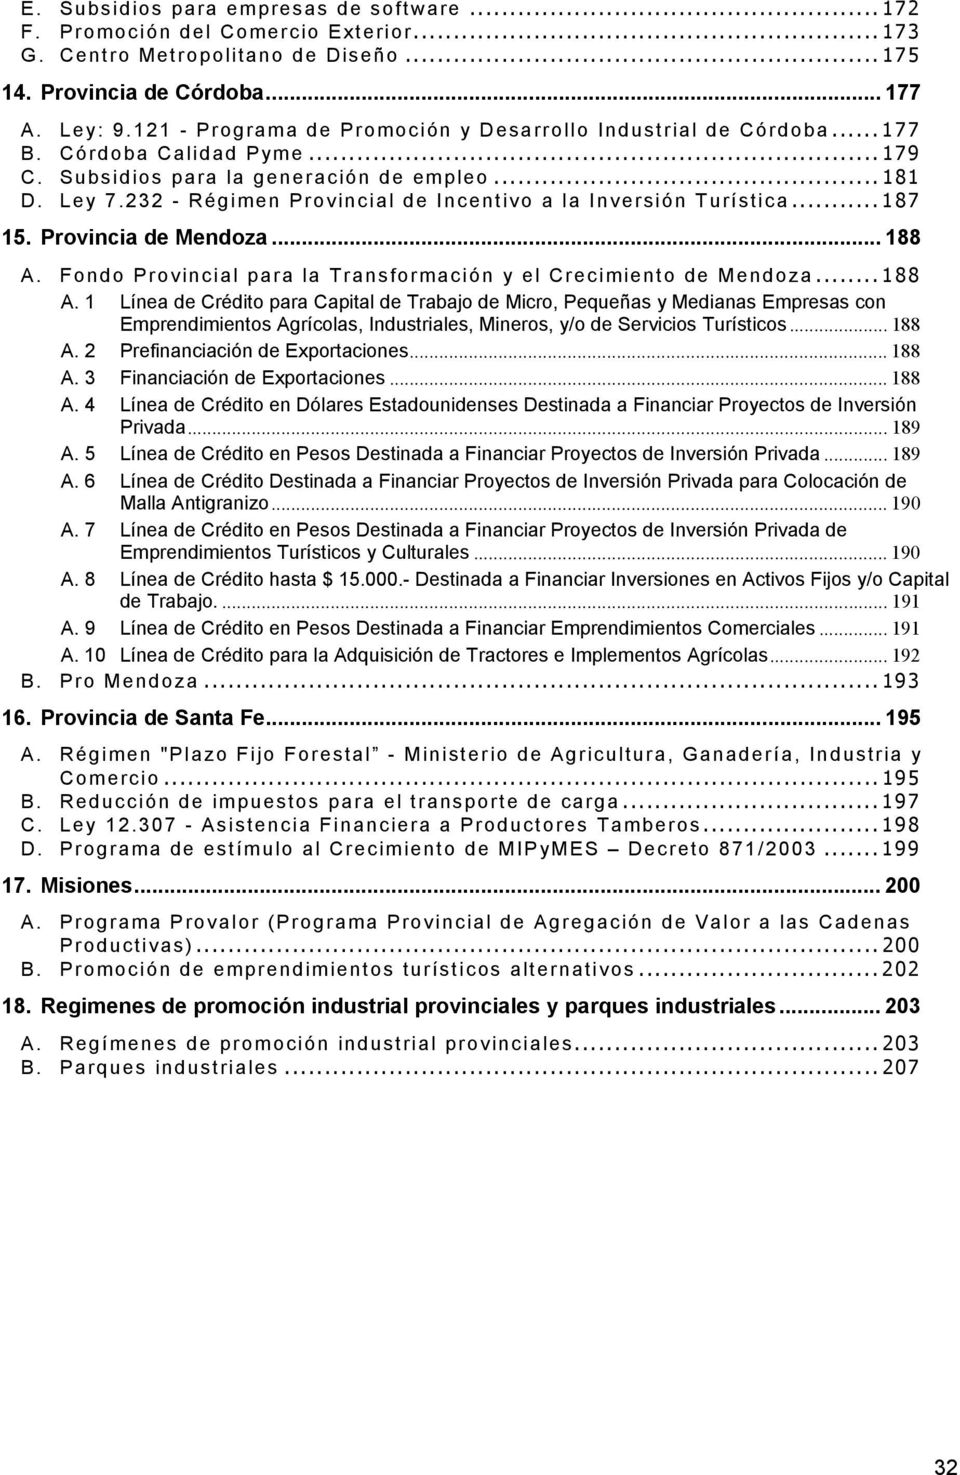 232 - Régimen Provincial de Incentivo a la Inversión Turística...187 15. Provincia de Mendoza... 188 A.